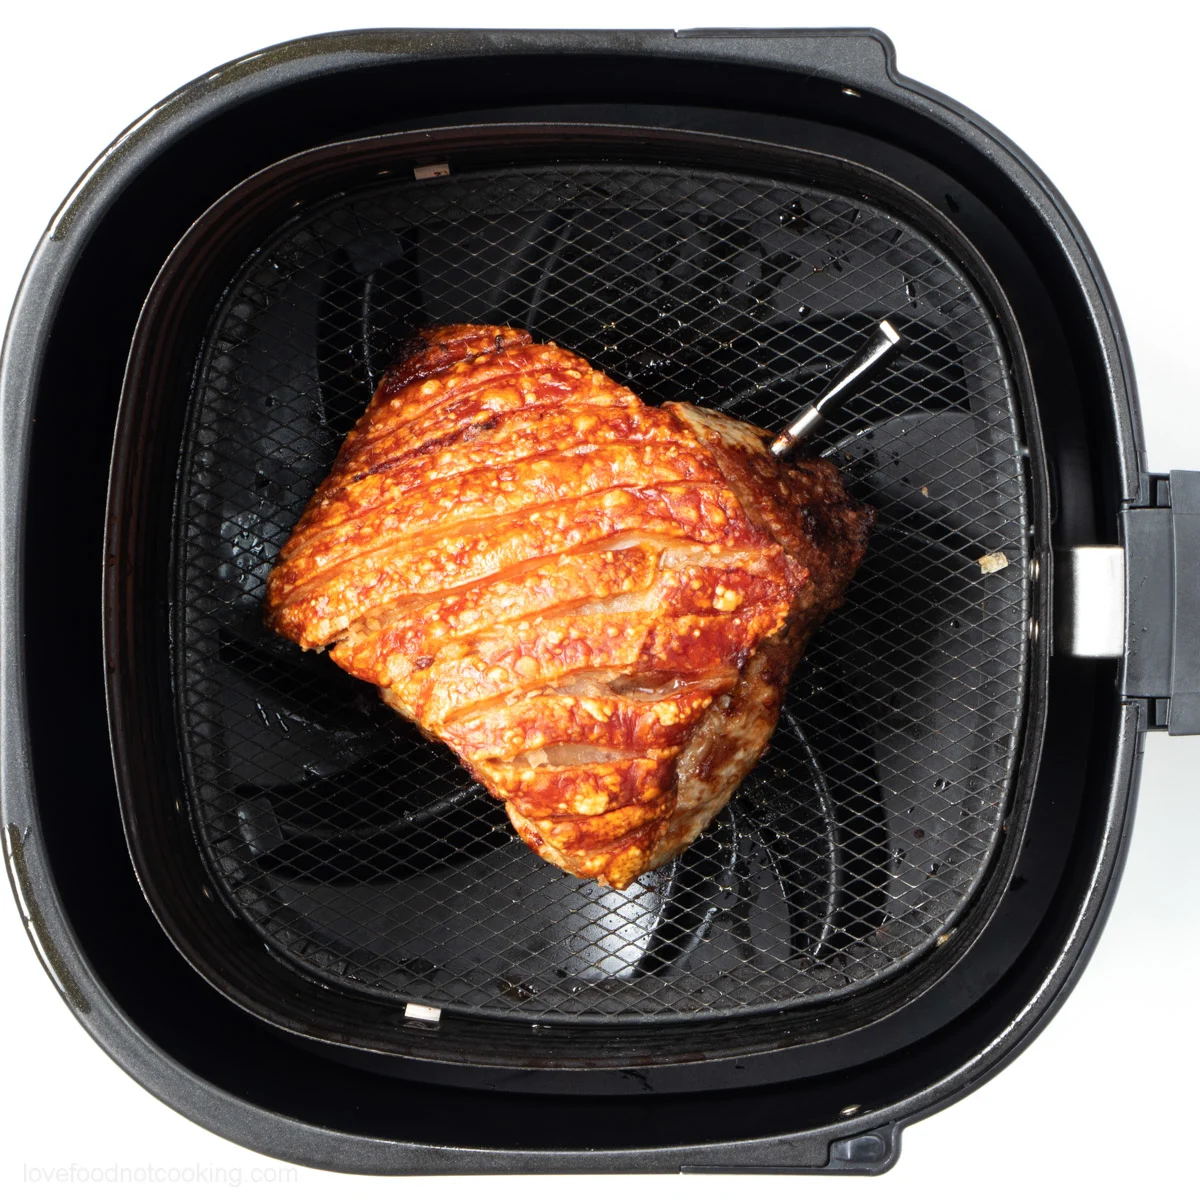 Air fried pork roast in air fryer basket.